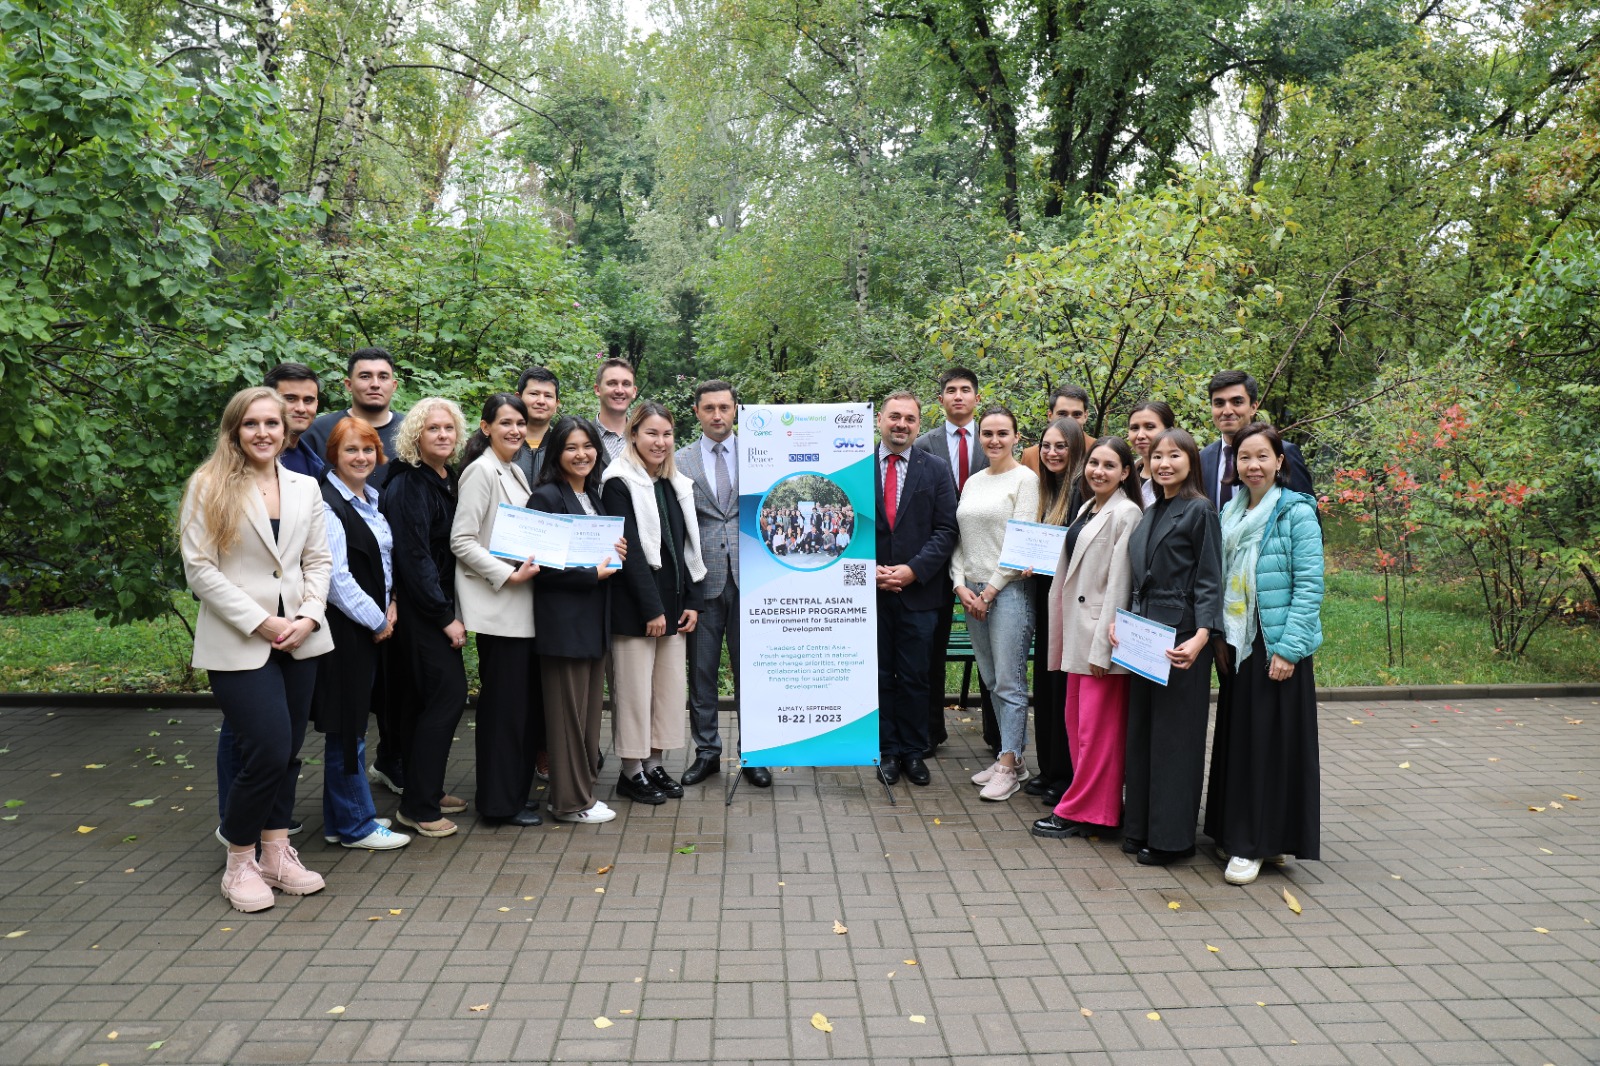 14-я Центрально-Азиатская программа лидерства по окружающей среде для устойчивого развития (ЦАПЛ) состоится в сентябре